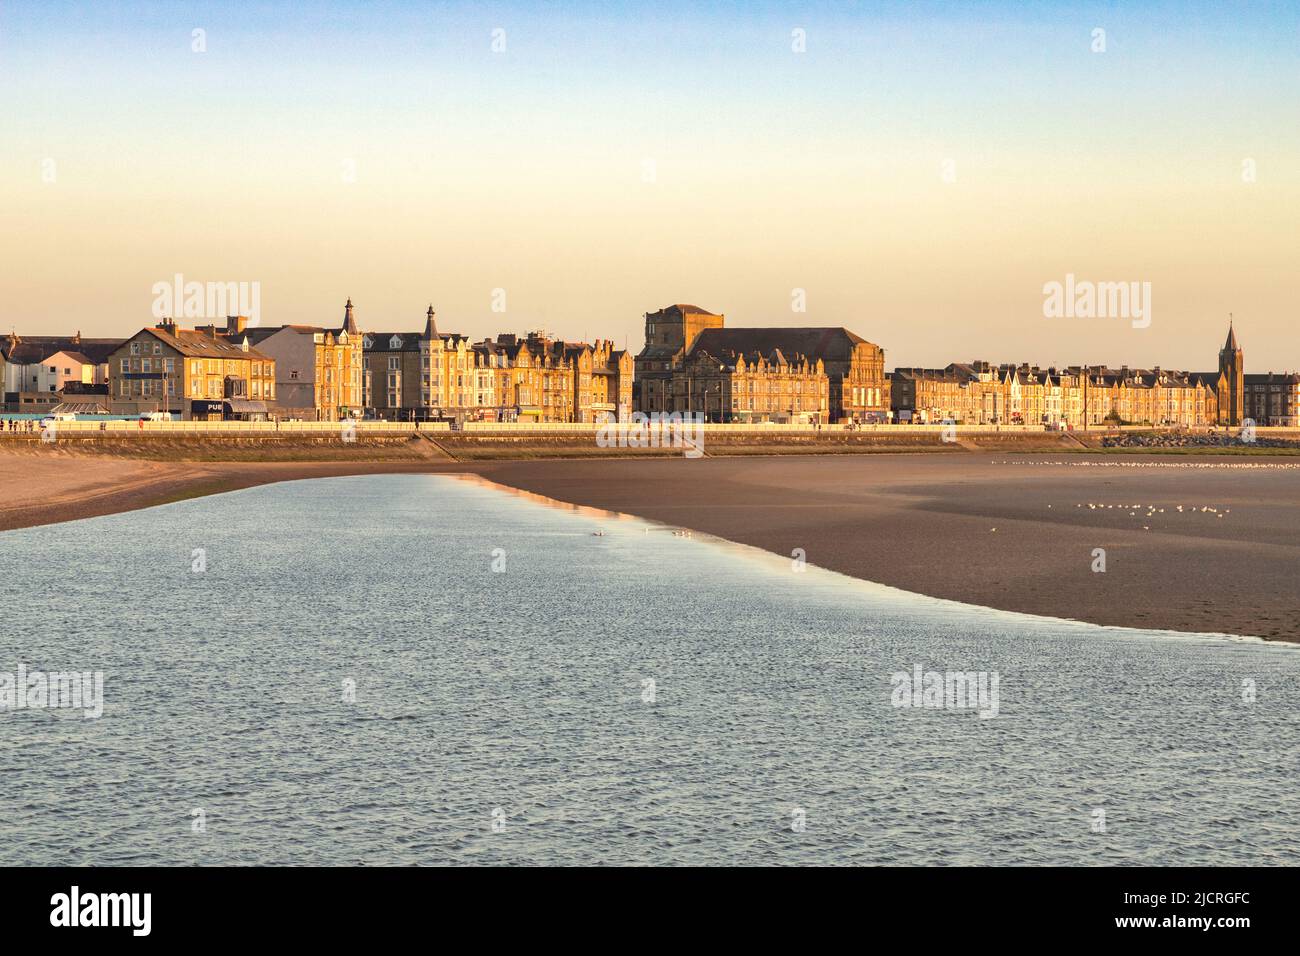 13 juillet 2019: Morecambe, Lancashire, Royaume-Uni - la plage le soir, avec une marée montante, et les bâtiments le long de la promenade. Banque D'Images